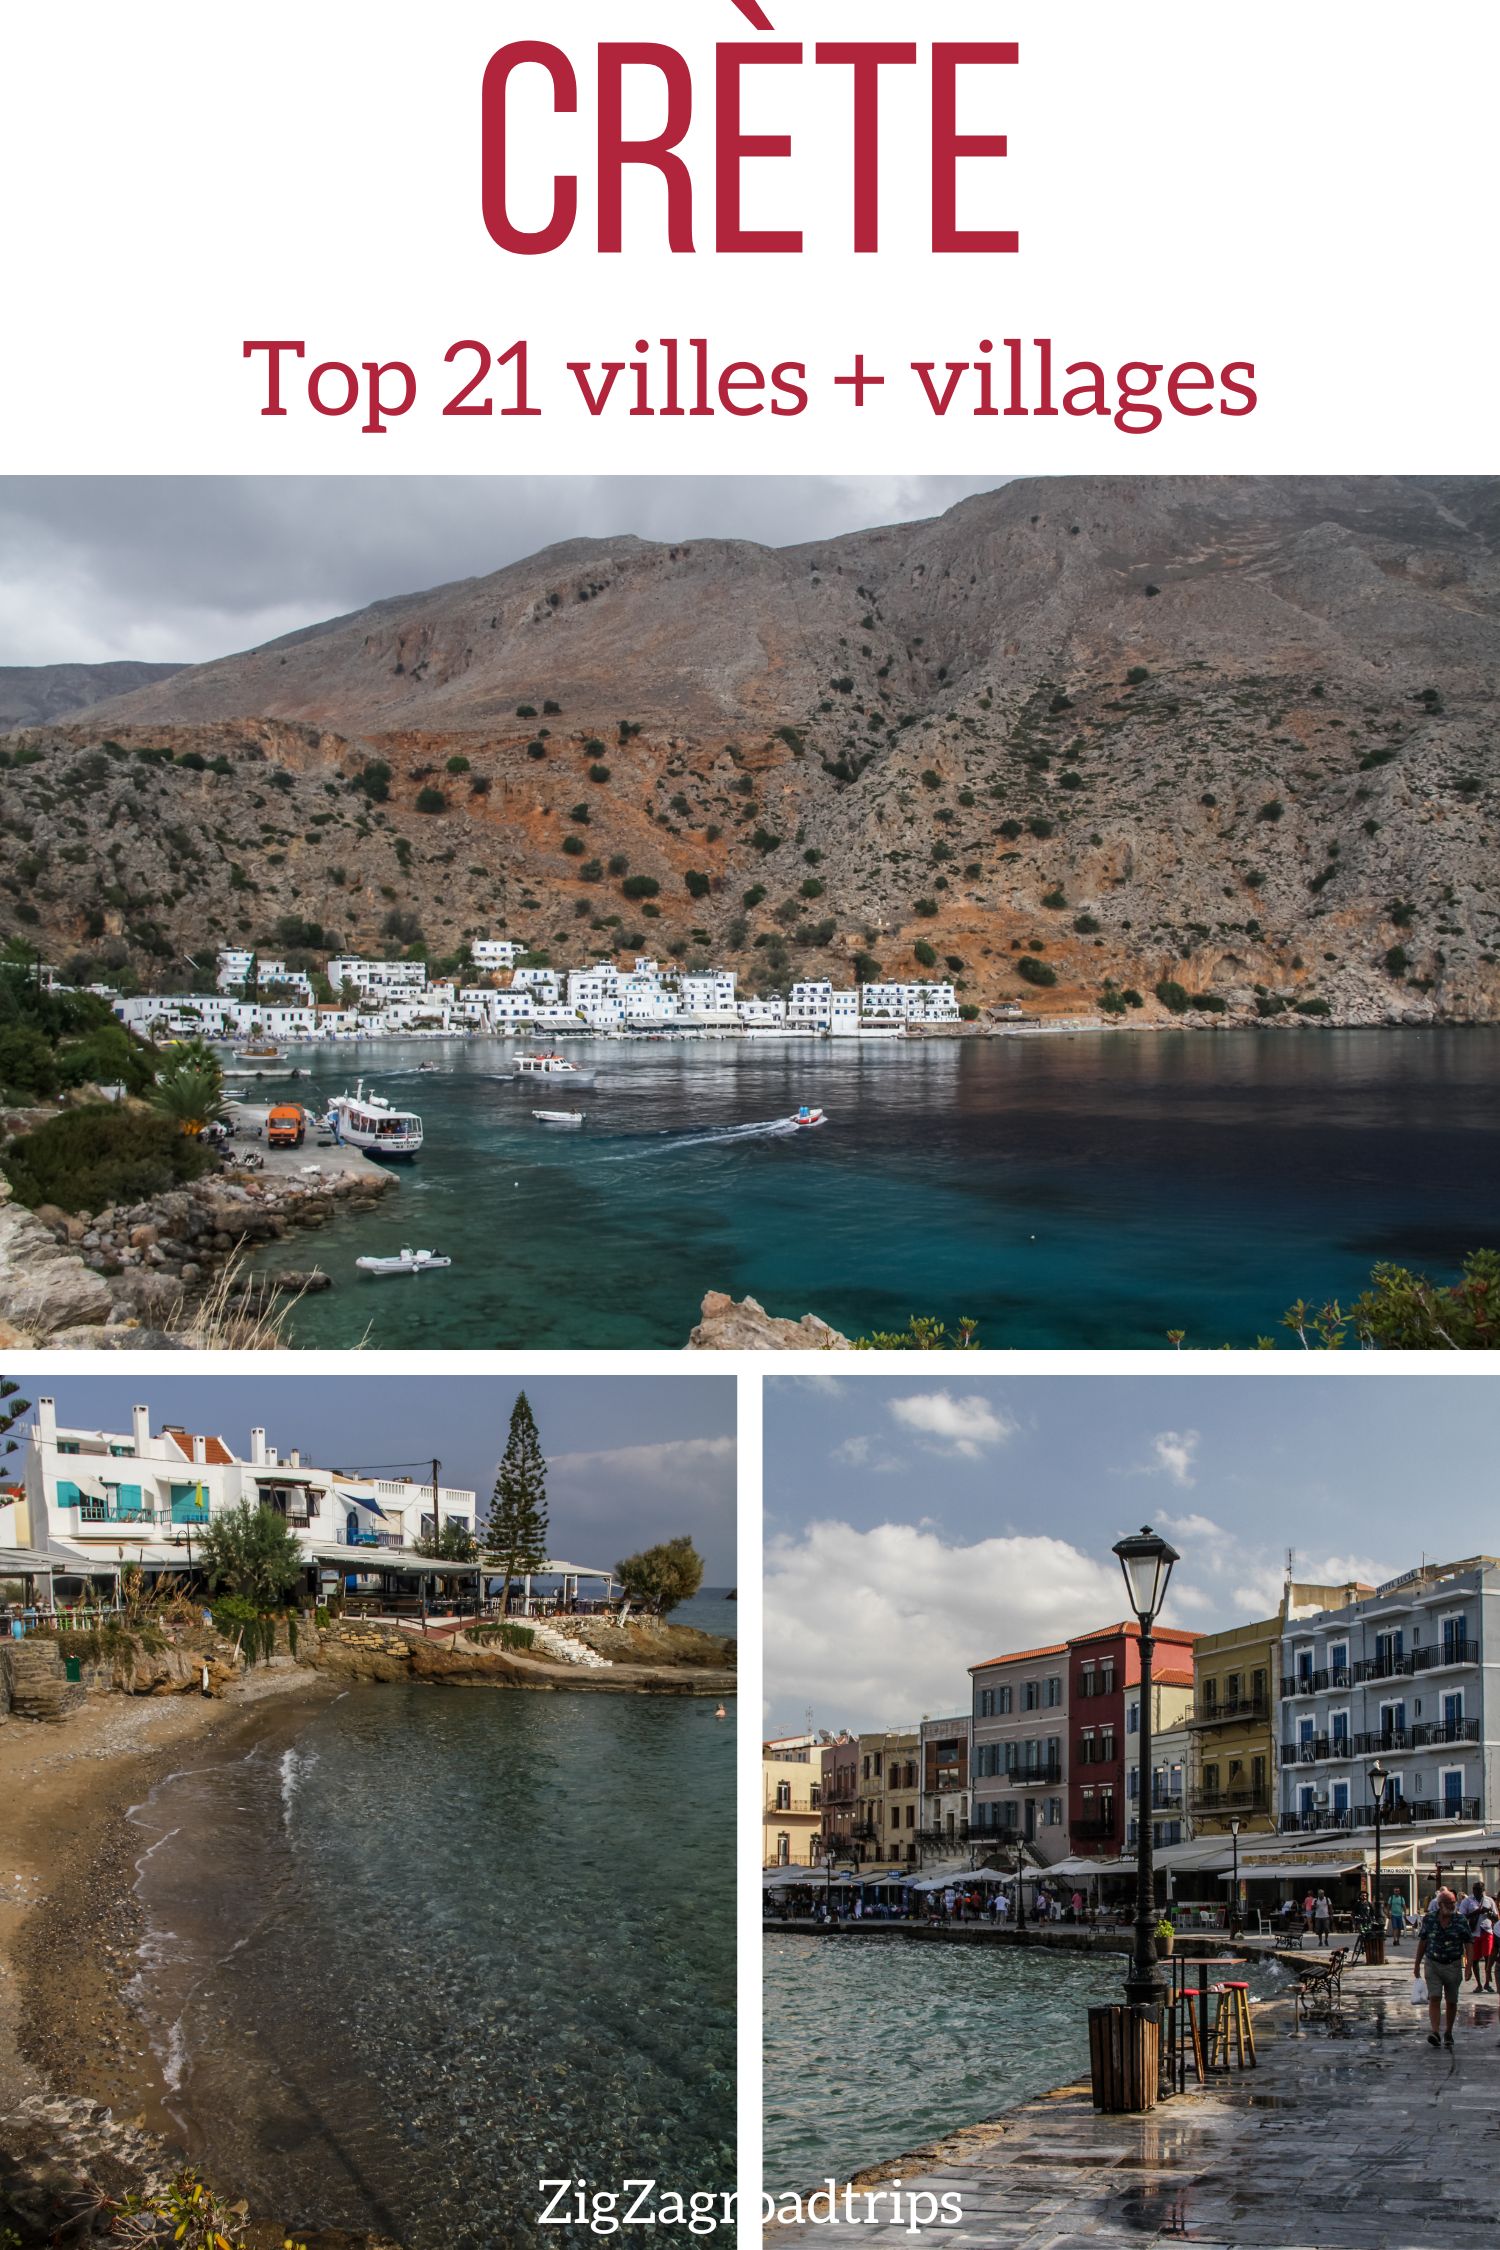 plus belles villes Crete plus beaux villages liste pin